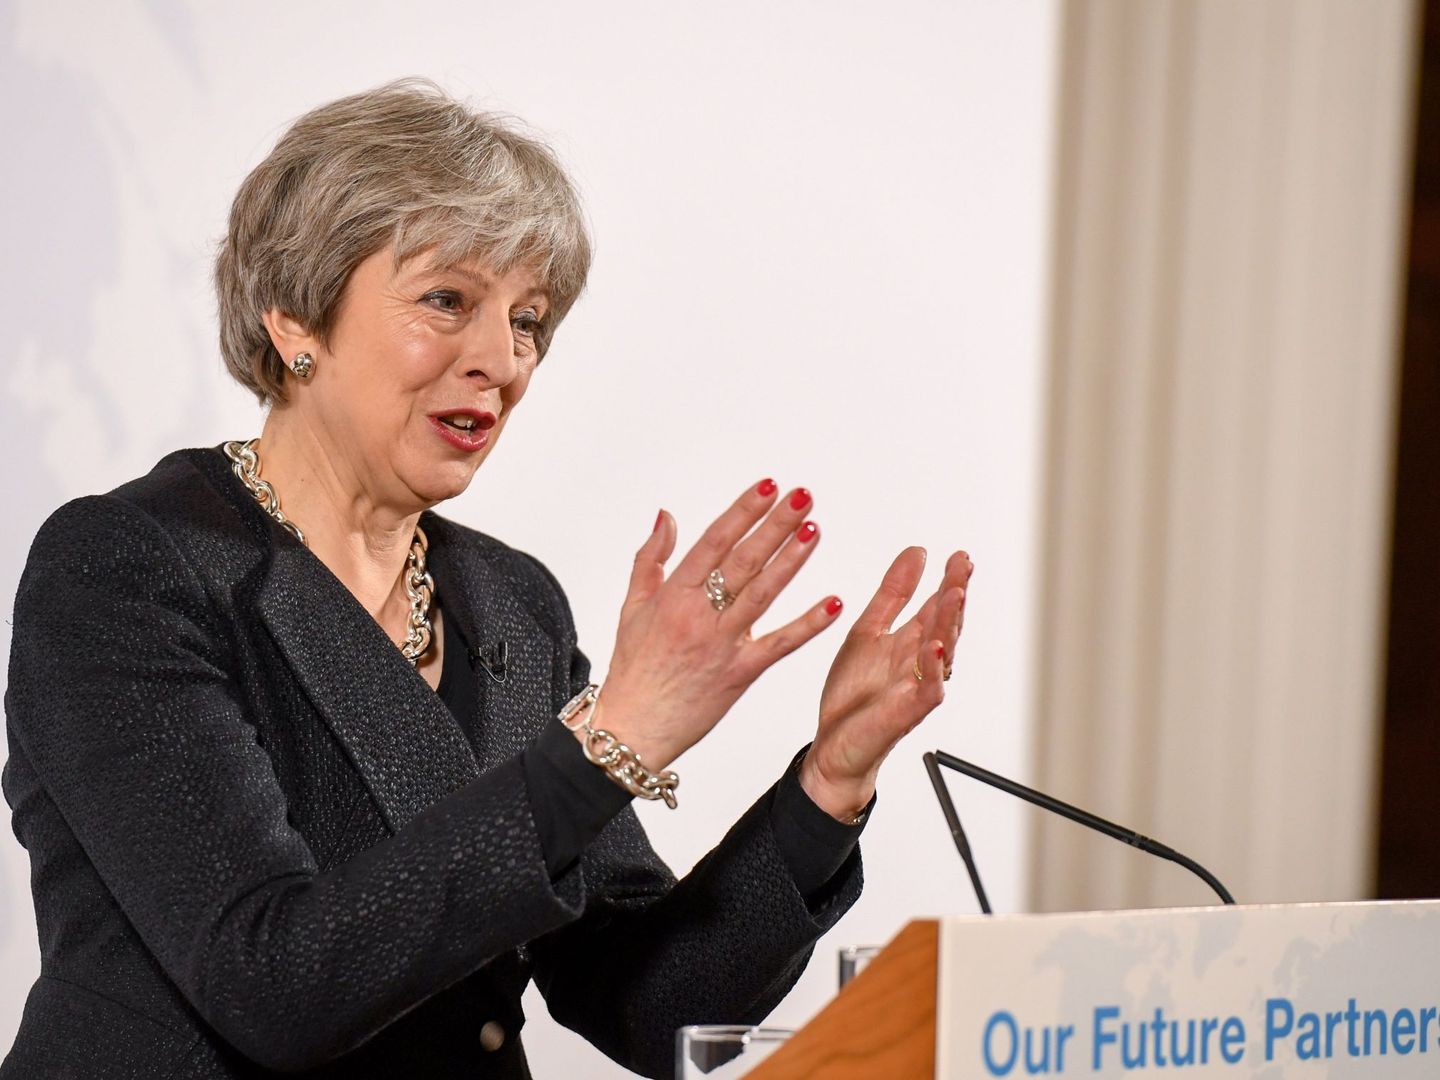 775132134. LONDRES (REINO UNIDO), 02 03 2018.- La primera ministra británica, Theresa May, expresa su posición de cara a la próxima fase de las negociaciones del 'brexit' durante un acto en la Mansion House en Londres, Reino Unido, hoy, 2 de marzo de 2018. May admitió hoy que el Reino Unido entra en un 'momento crucial' de las negociaciones del 'brexit' y aseguró que el acuerdo que se alcance con la UE 'debe respetar el resultado del referéndum' de 2016, en el que los británicos votaron por el 'brexit', y se mostró confiada de conseguir un pacto porque es de 'interés' de ambas partes. EFE  Chris J. Ratcliffe   Pool